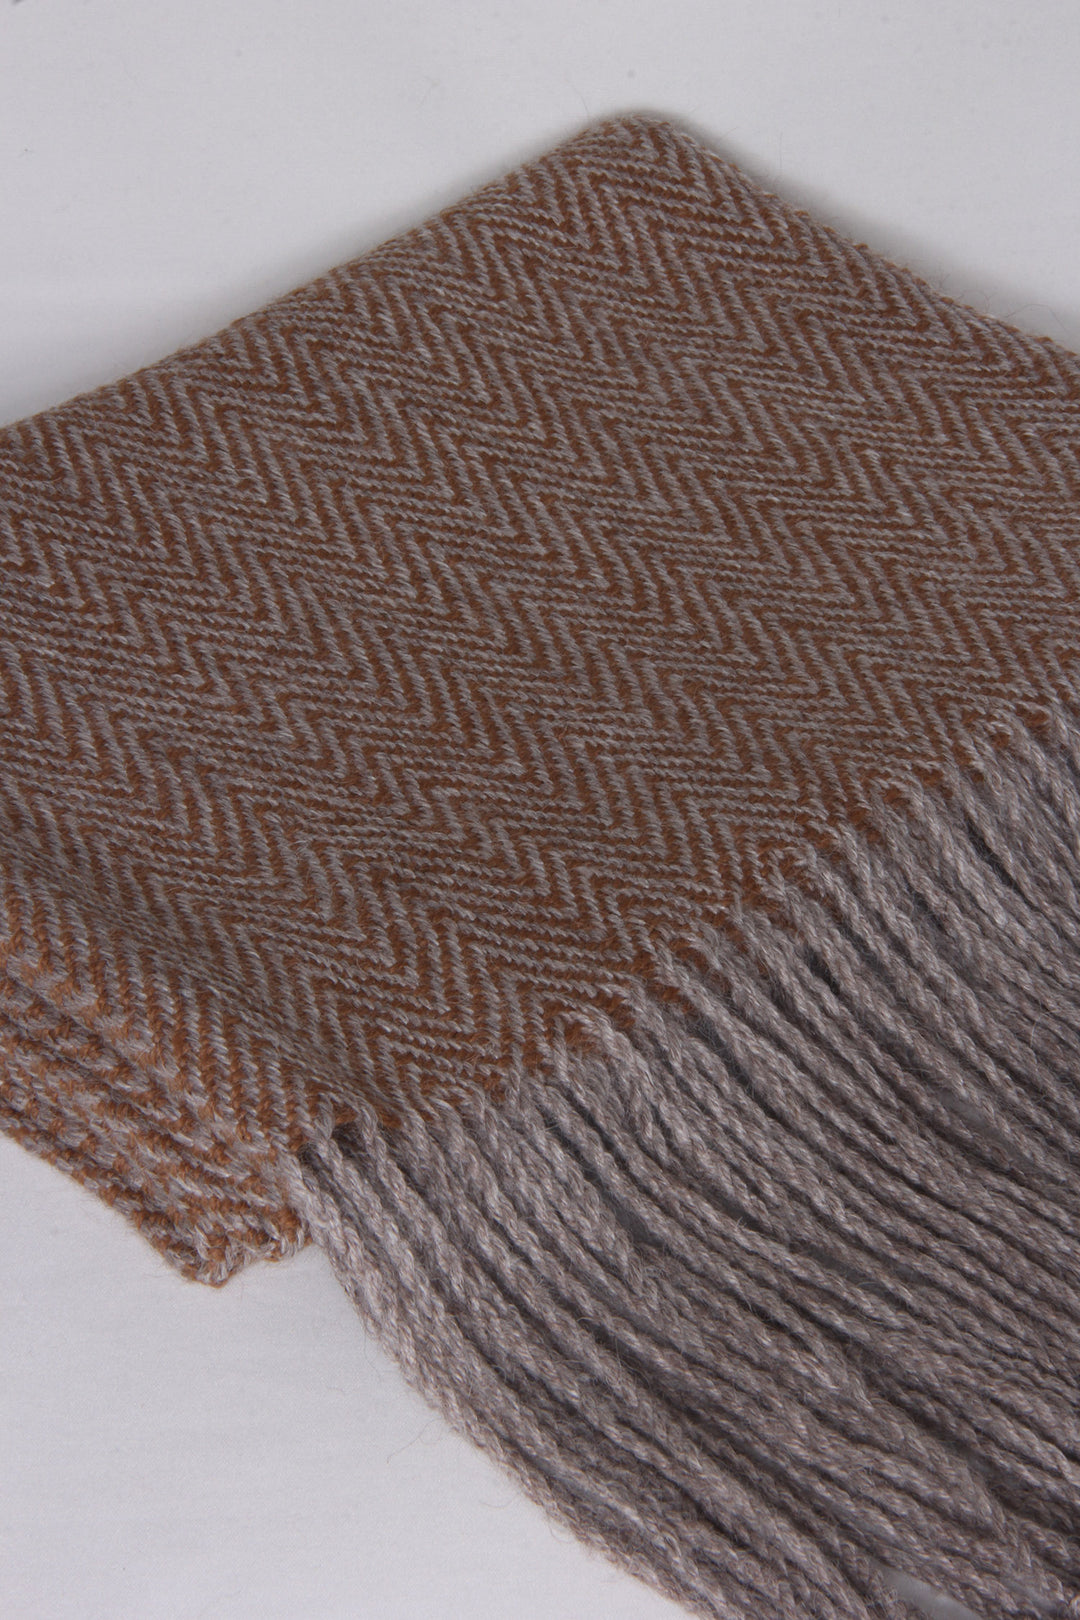 Alpaka Wolle Schal mit Fischgrätenmuster, braun und bronzefarben, gefaltet